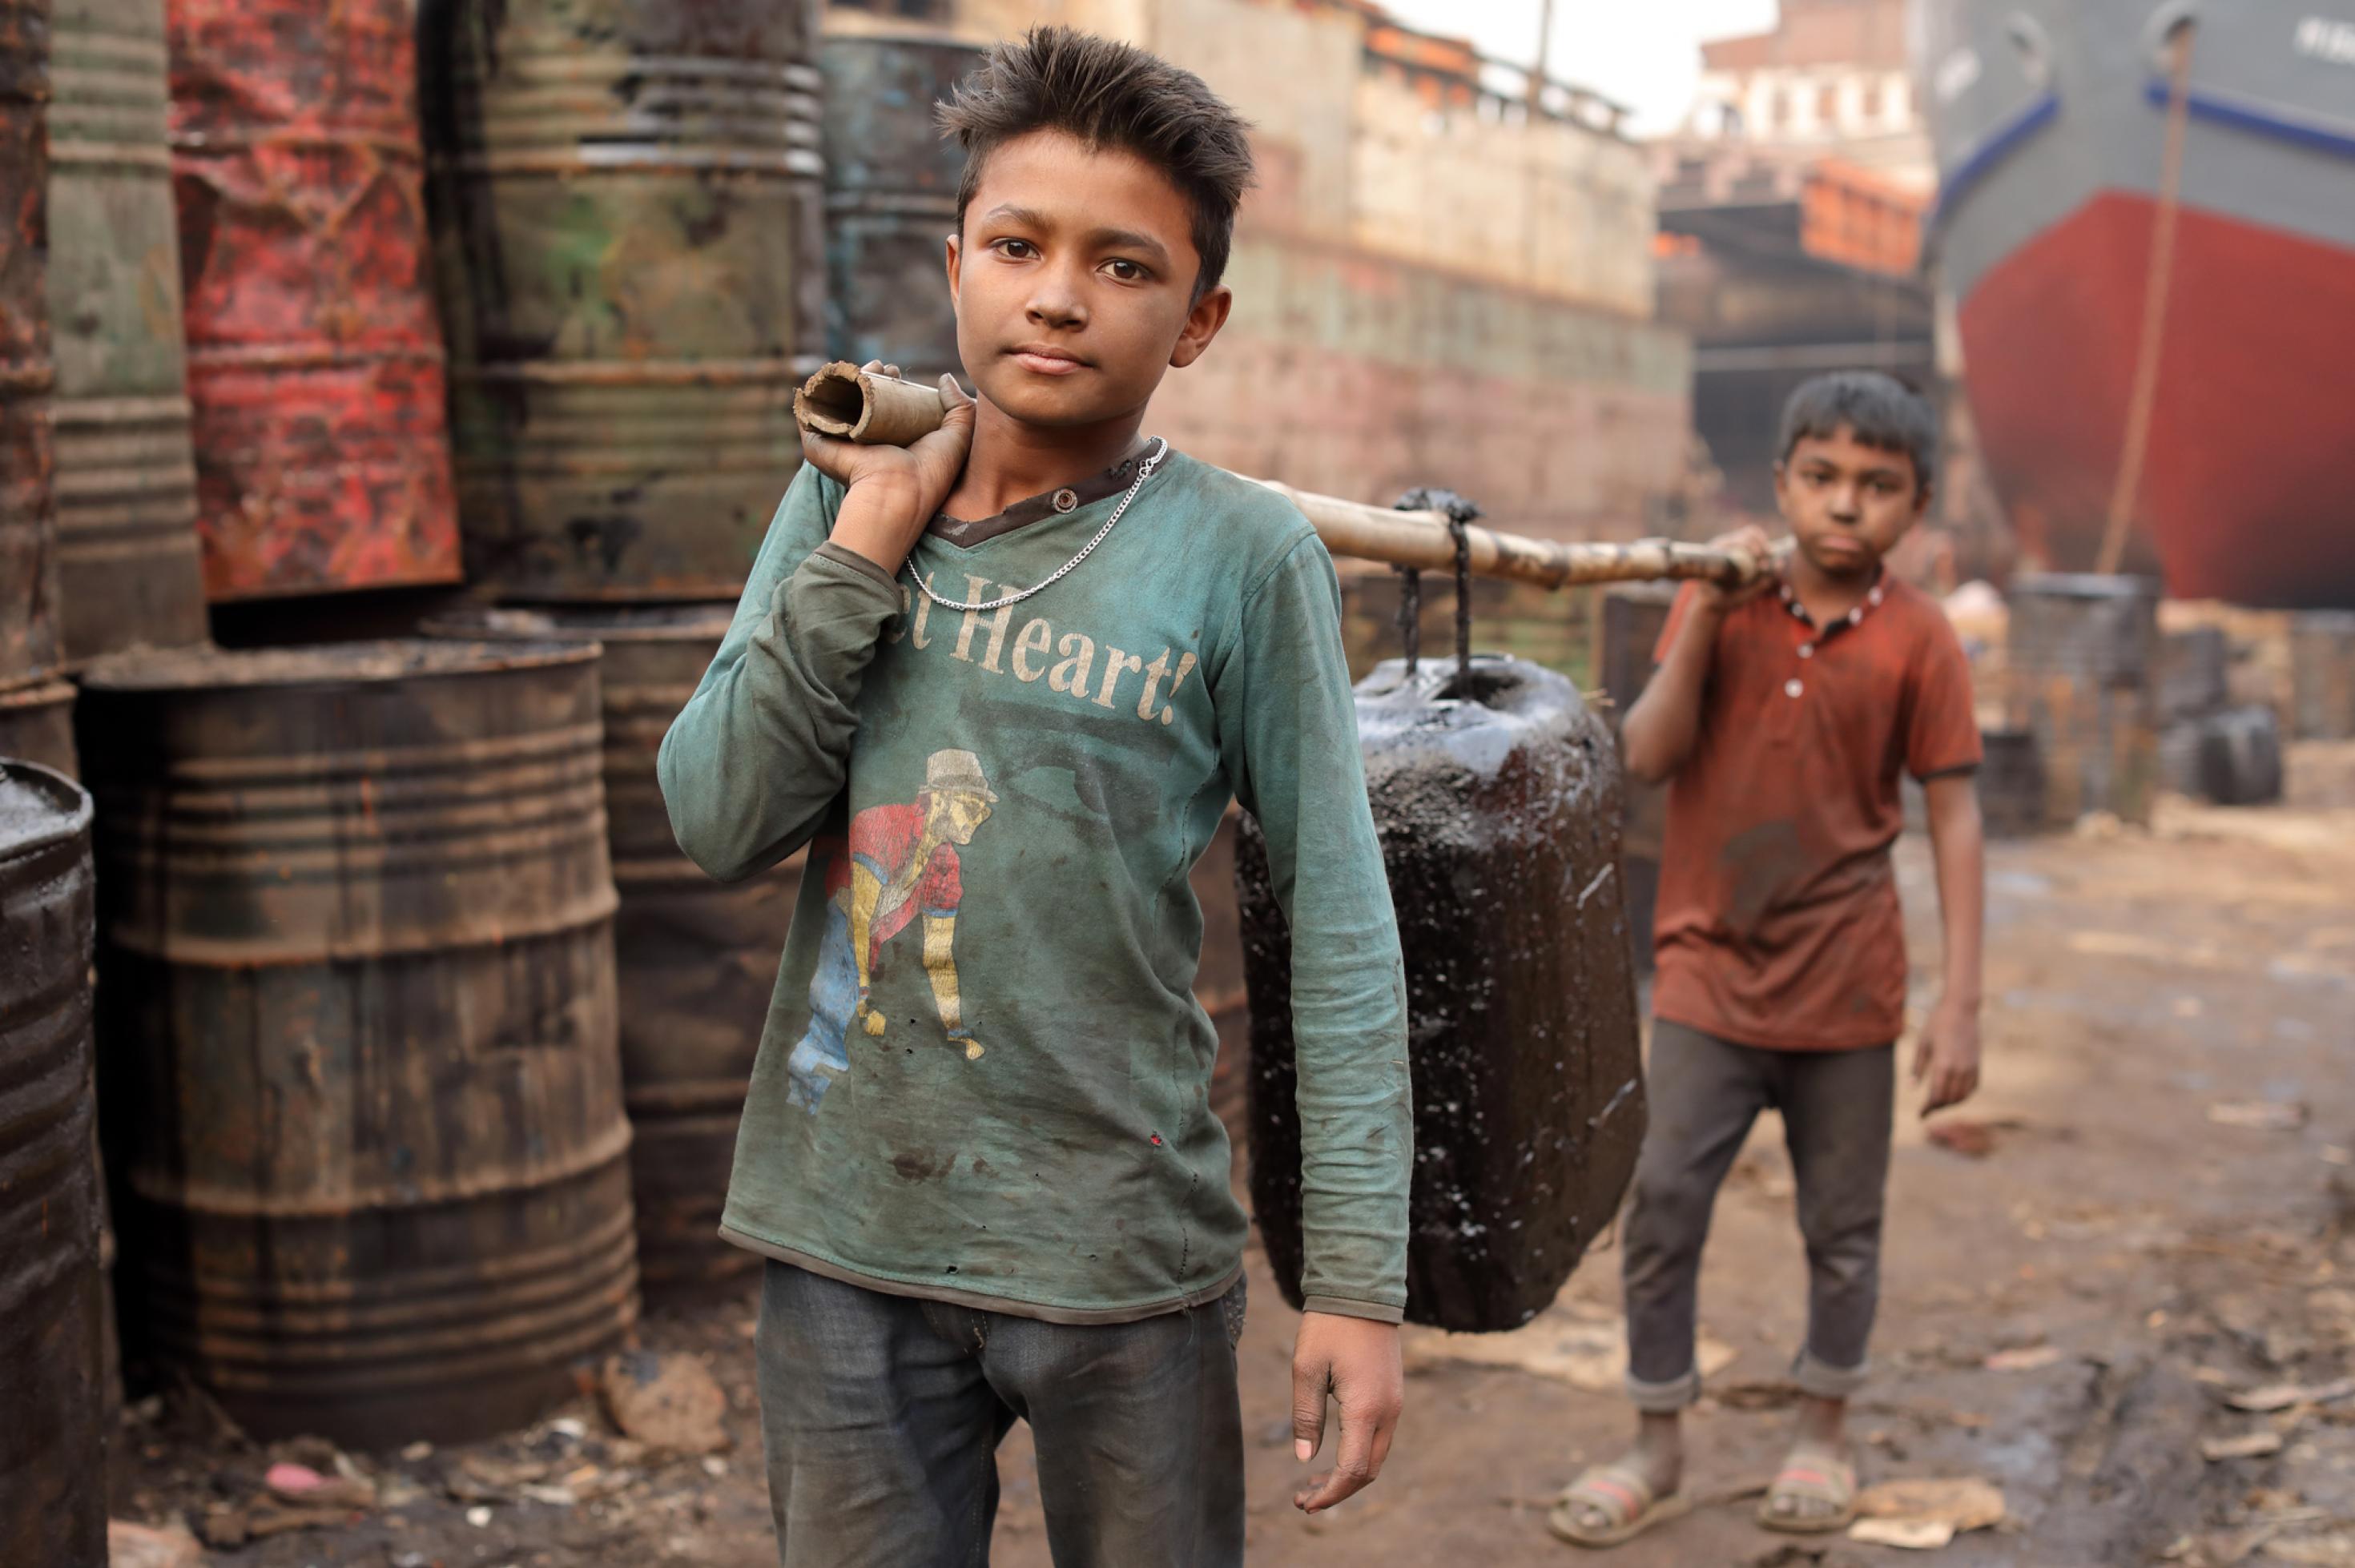 Das Foto zeigt eine Werft, links im Bild sind Fässer aufgestapelt. Im Fokus des Bildes sind zwei etwa 10-jährige Jungen. Die beiden Kinderarbeiter tragen einer Stange, an der ein Kanister hängt. Mehr als 7,4 Millionen Mädchen und Jungen arbeiten, um nicht zu verhungern.